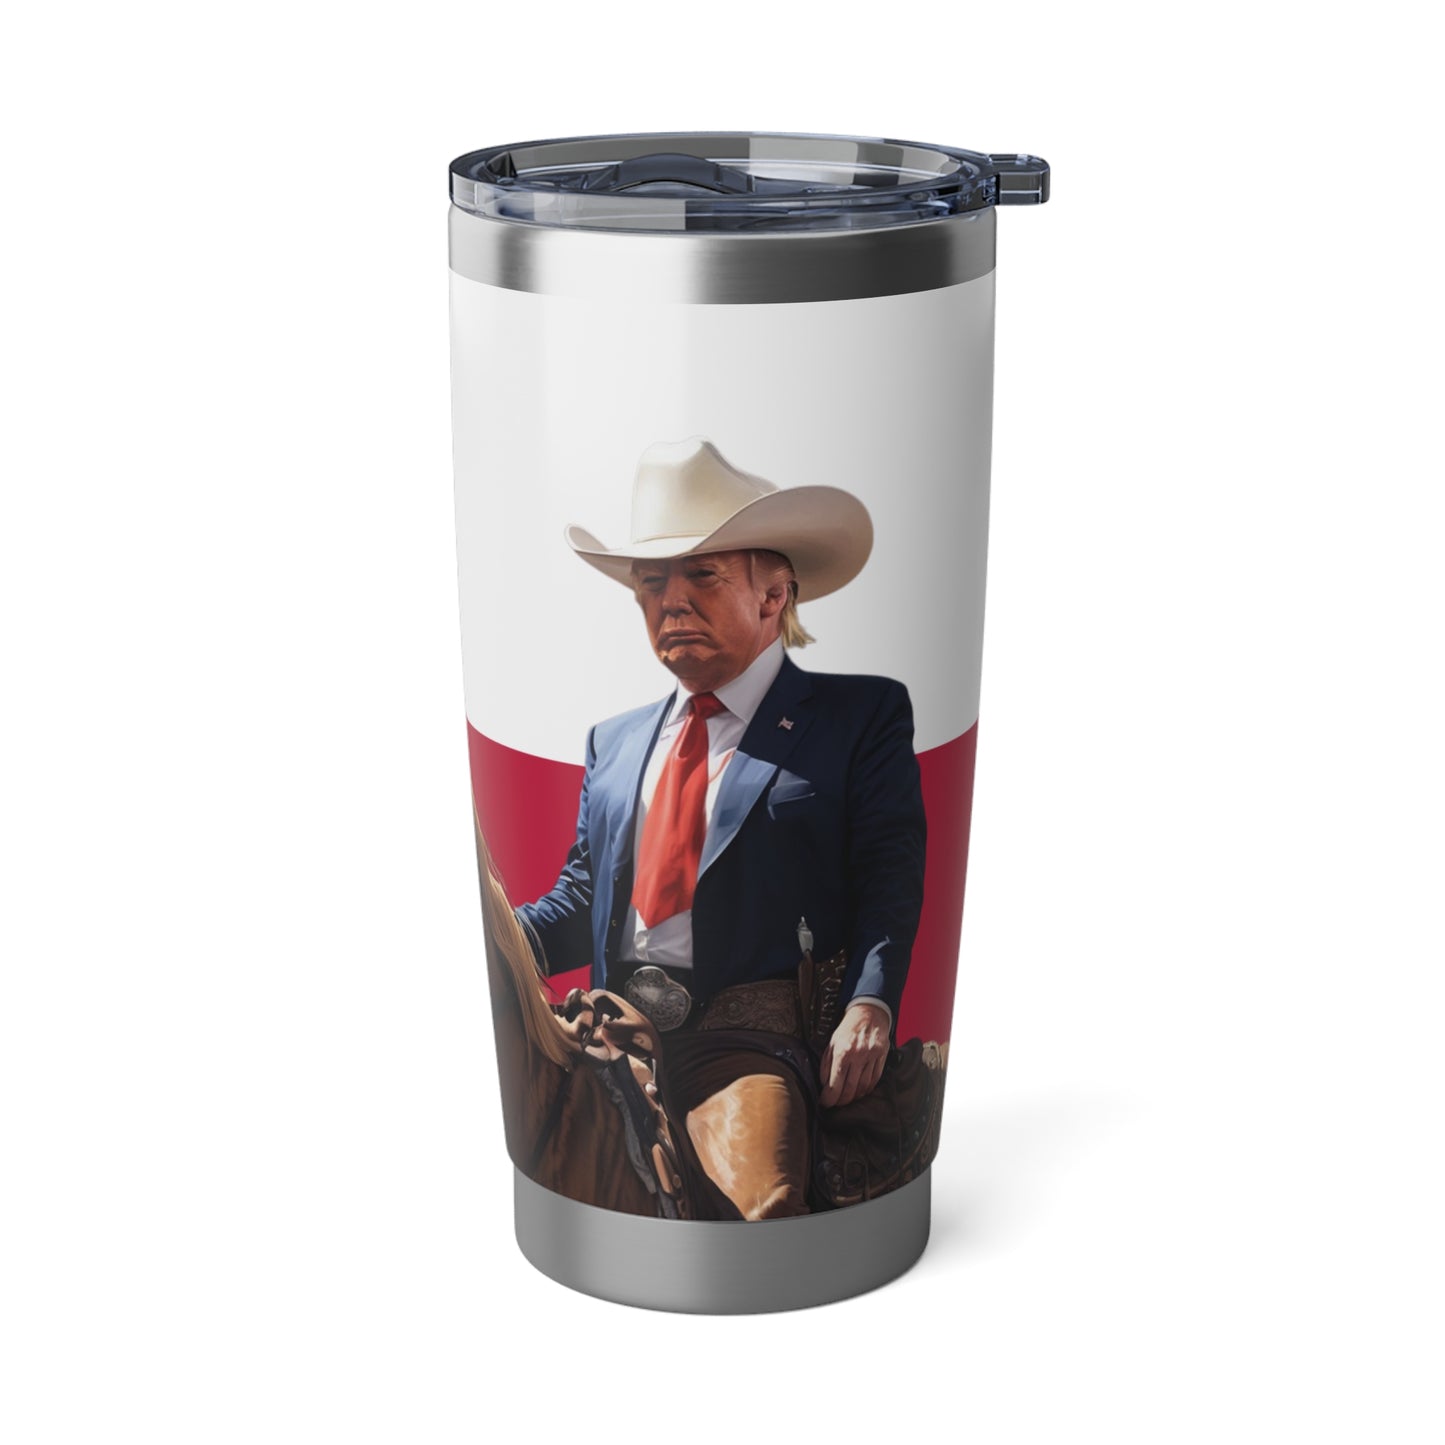 Make Texas Great Again Cowboy Trump Stainless Vagabond 20oz Tumbler